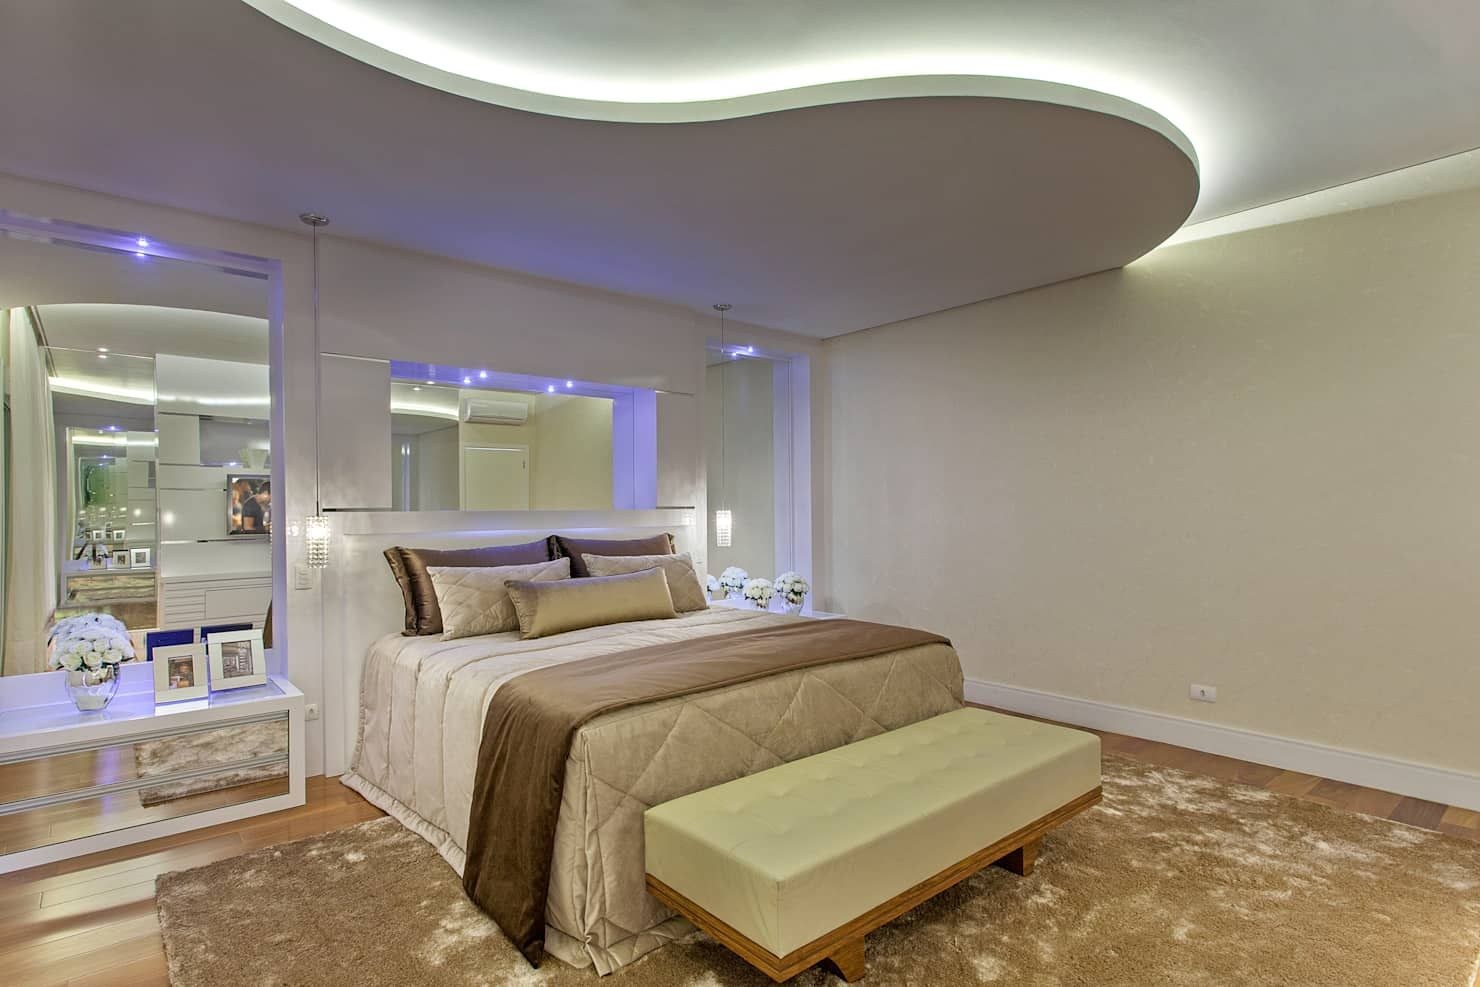 Потолки из гипсокартона для спальни красивые фотографии дизайн